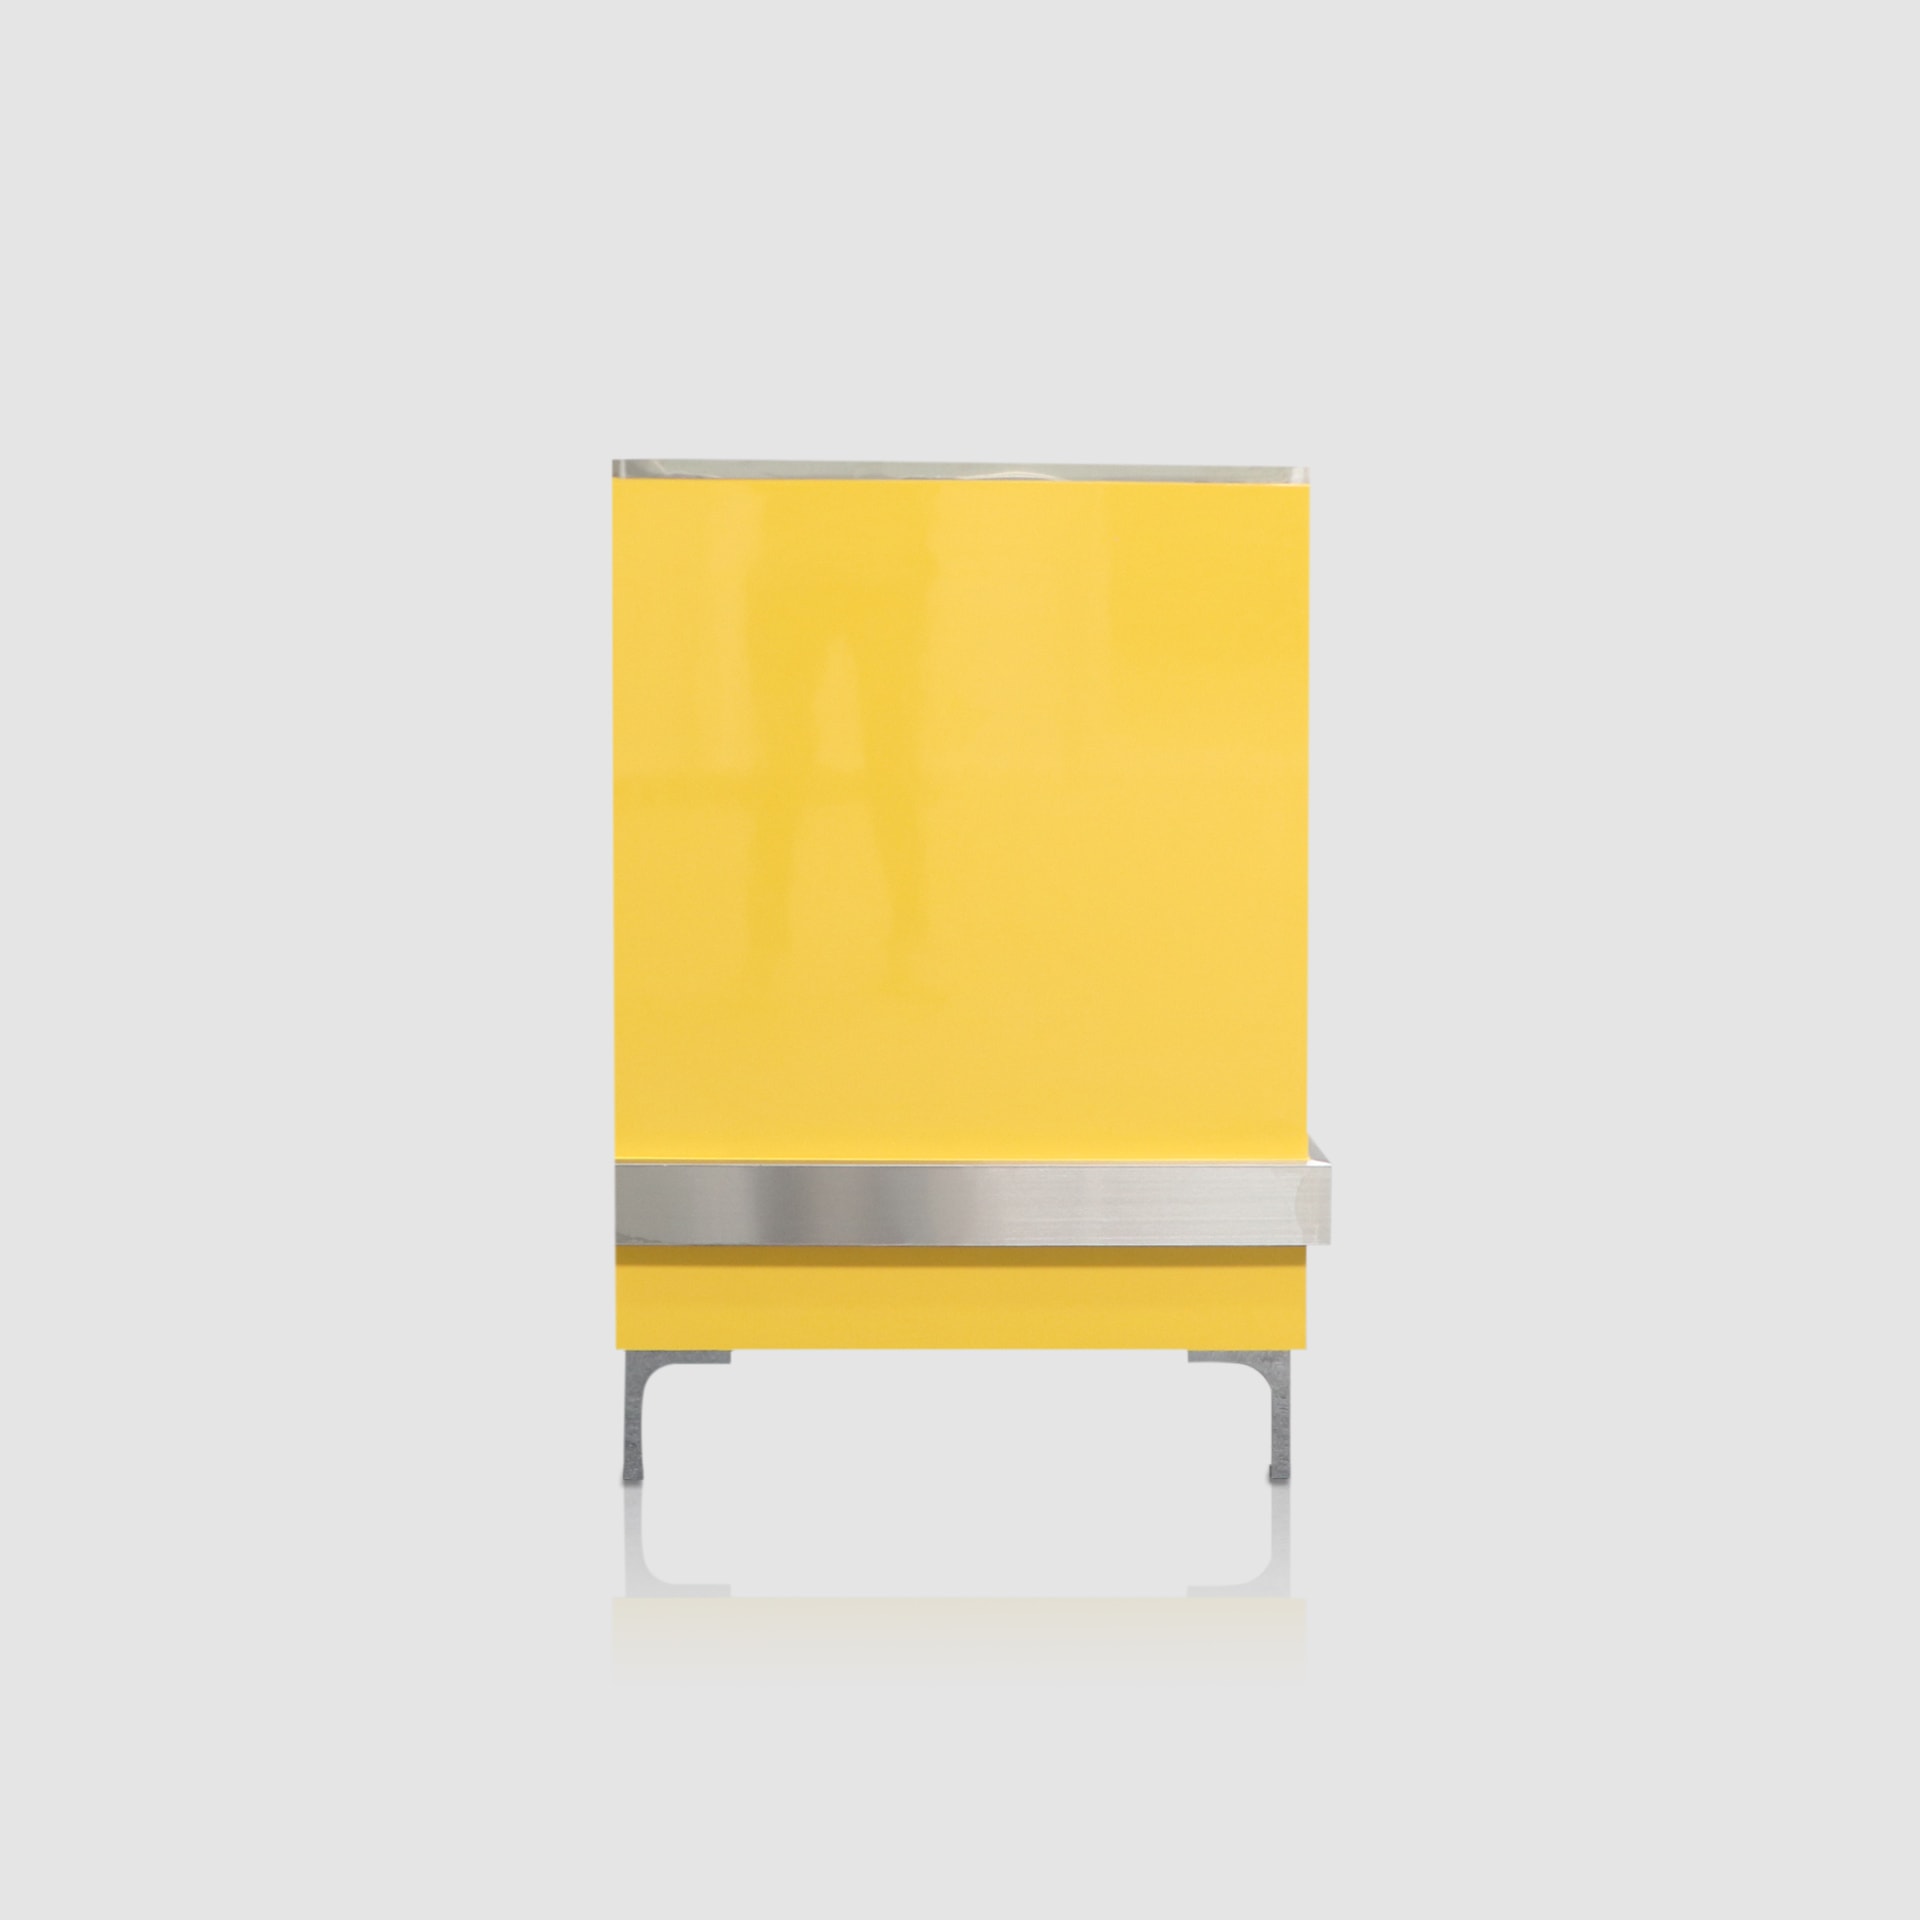 ด้านข้าง เคาน์เตอร์แคชเชียร์ สีเหลืองเงา มีขาโต๊ะกันน้ำ รุ่น CC-026